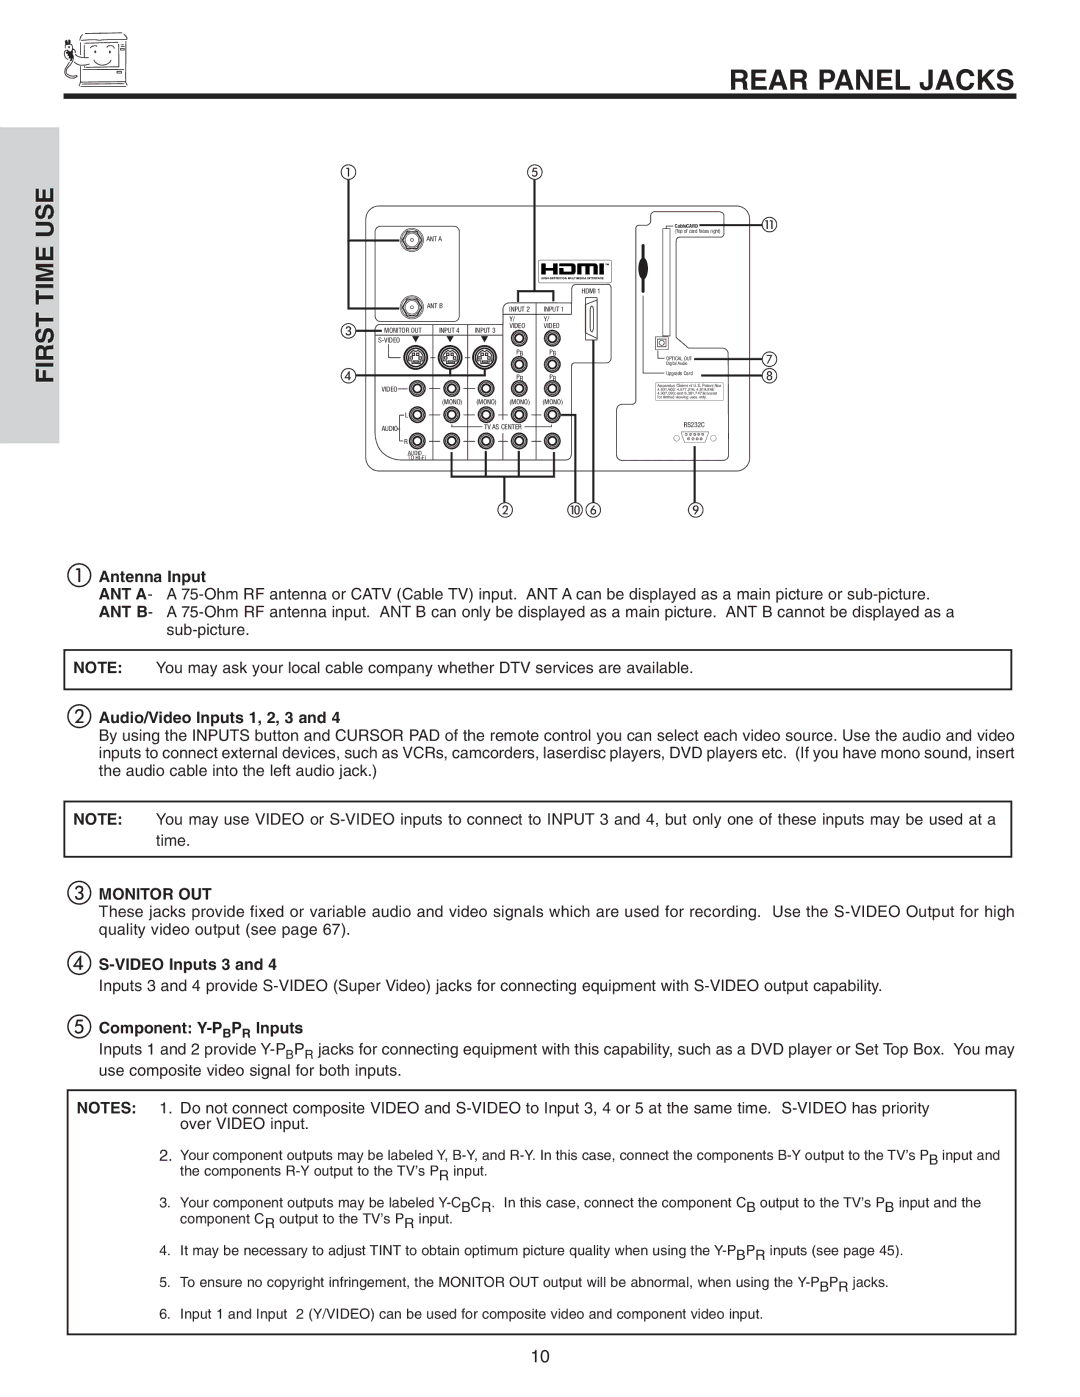 Hitachi 50V715, 50V710, 42V715, 60V715, 42V710 important safety instructions Rear Panel Jacks 